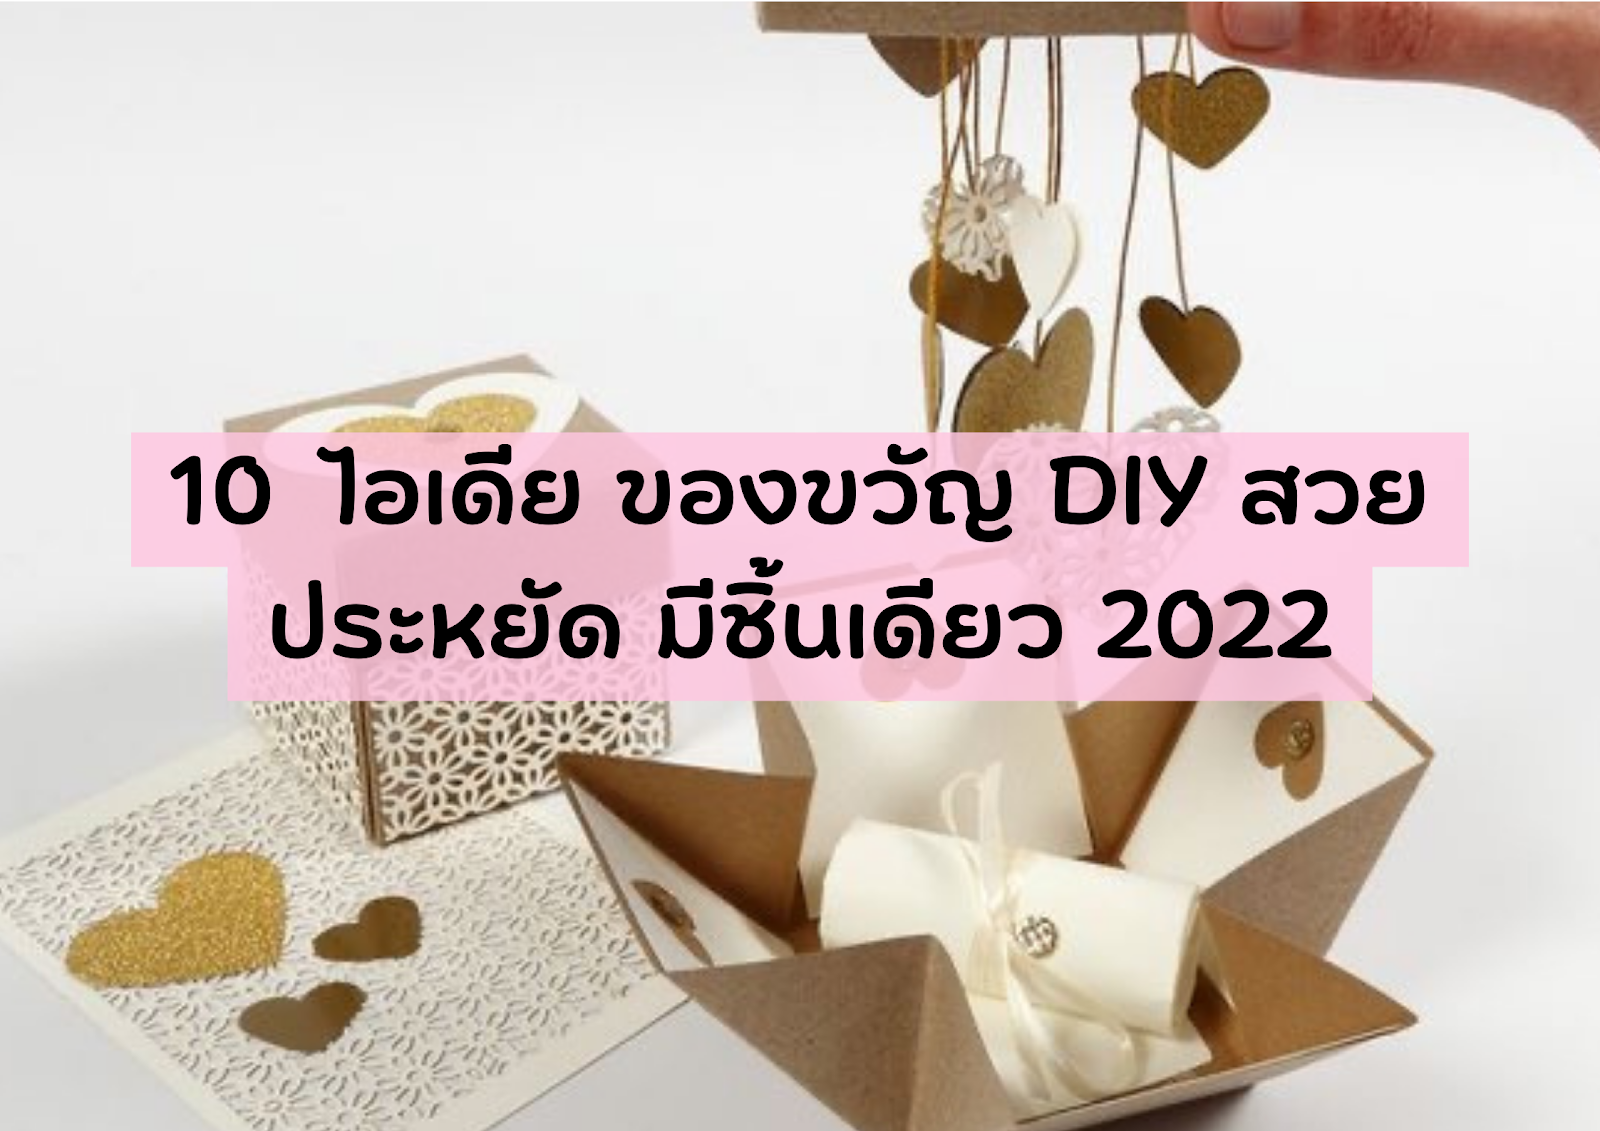 10 ไอเดีย ของขวัญ DIY สวย ประหยัด มีชิ้นเดียว 2022 1